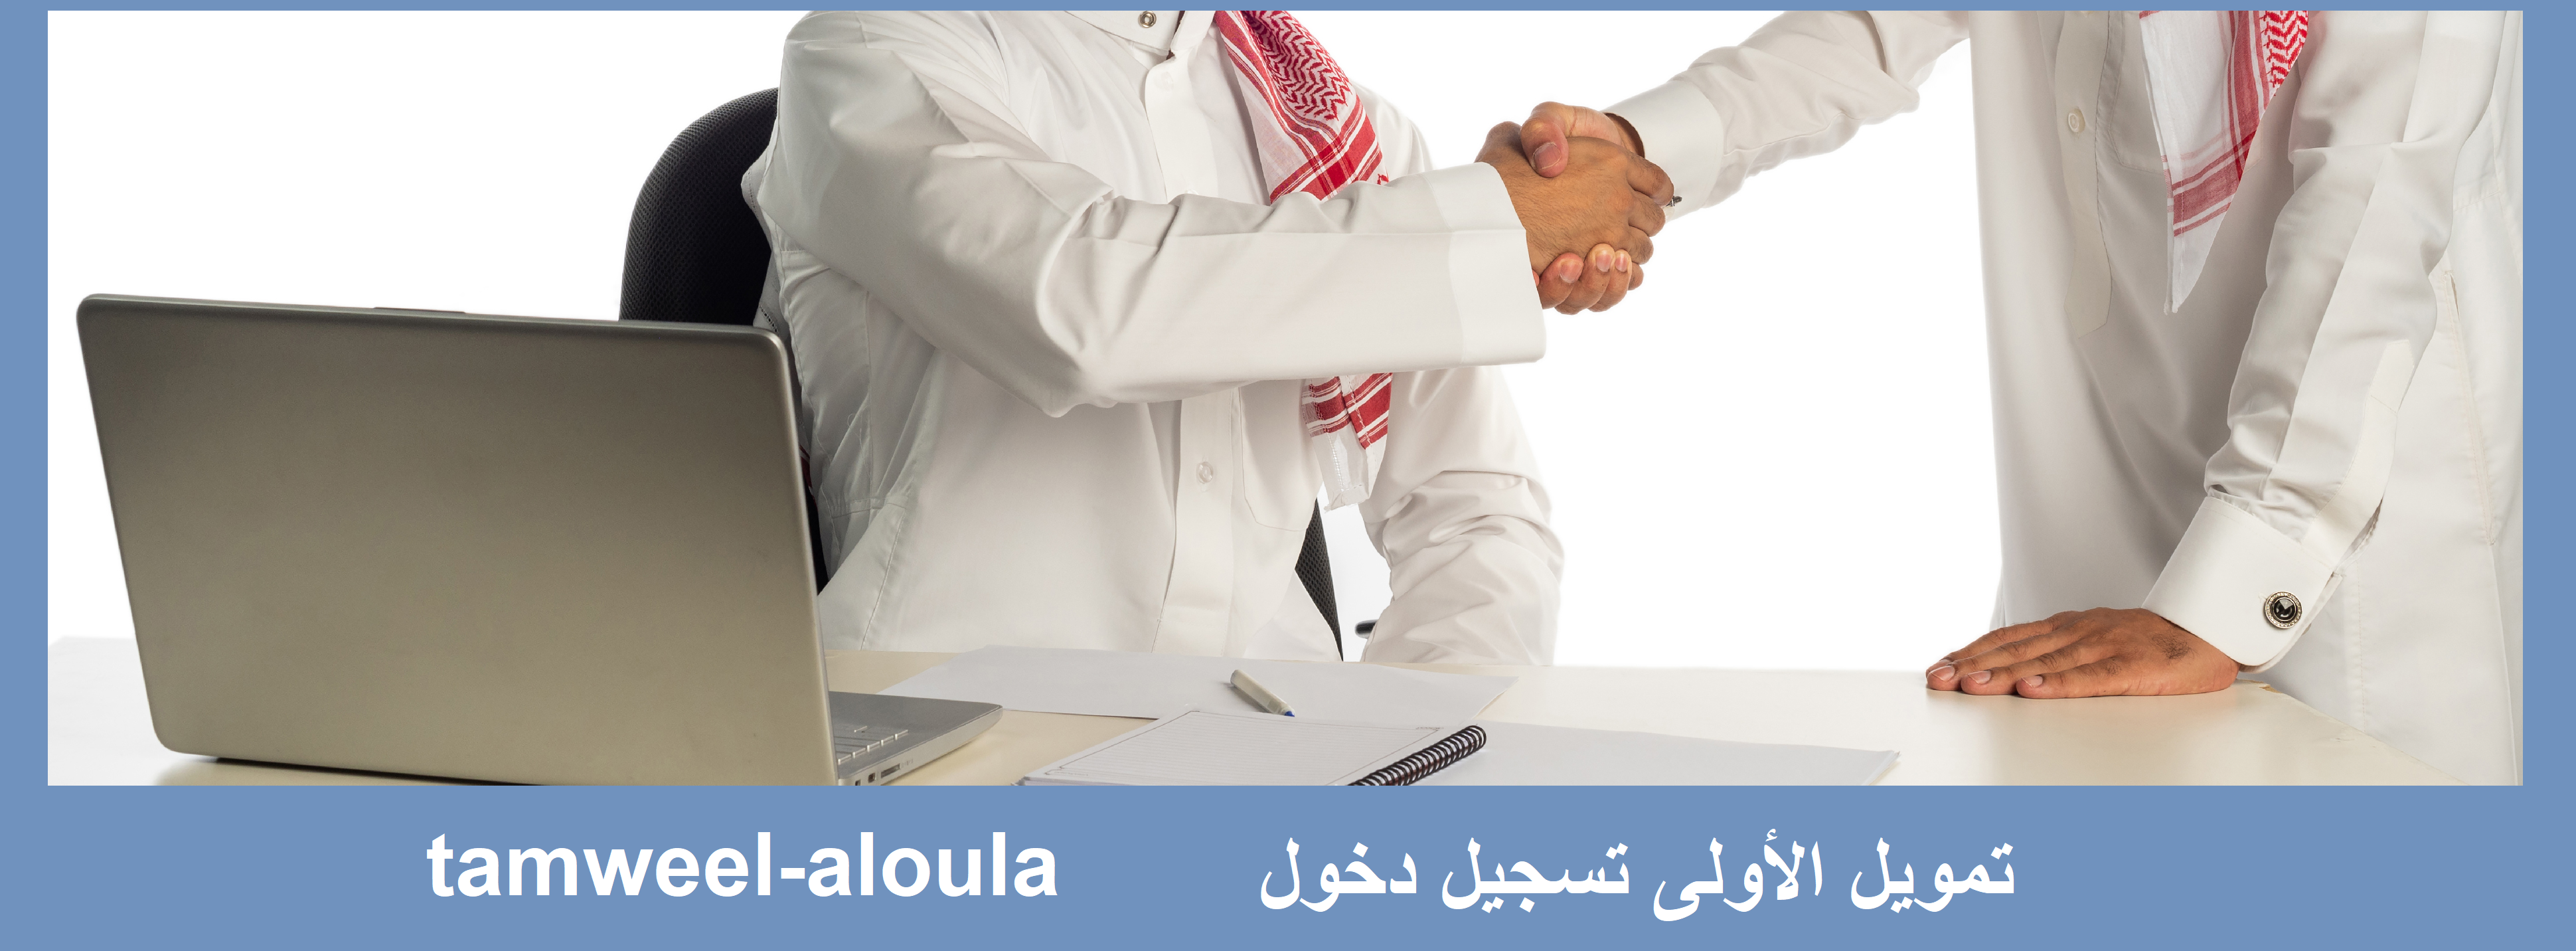 تسجيل دخول تمويل الأولى tamweel-aloula